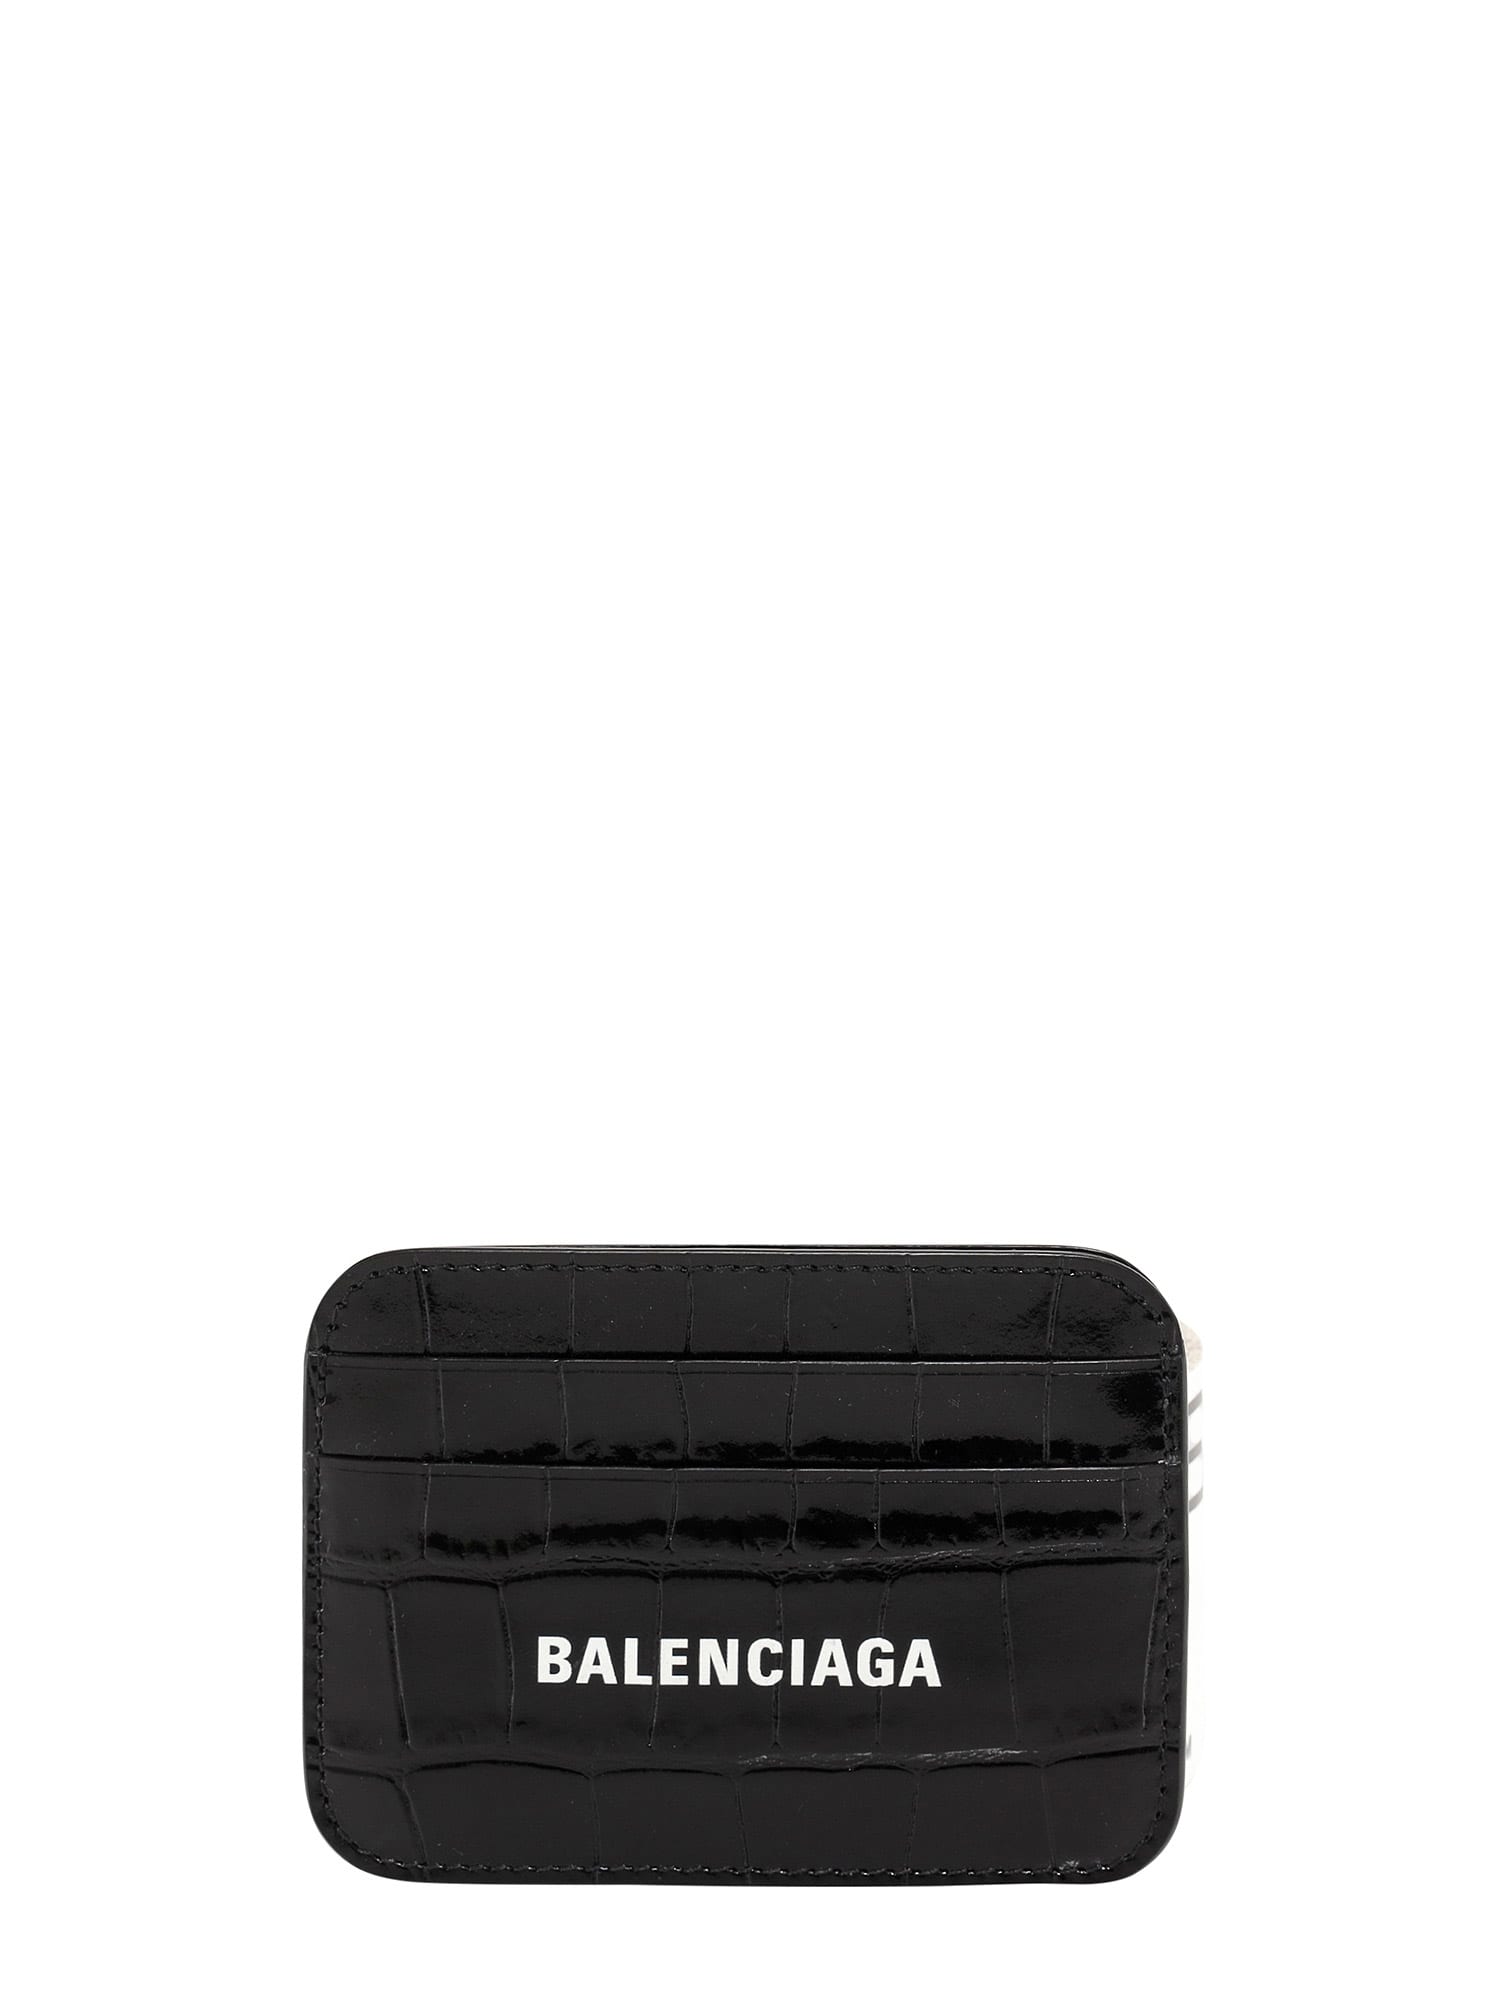 BALENCIAGA CARD HOLDER,11829616